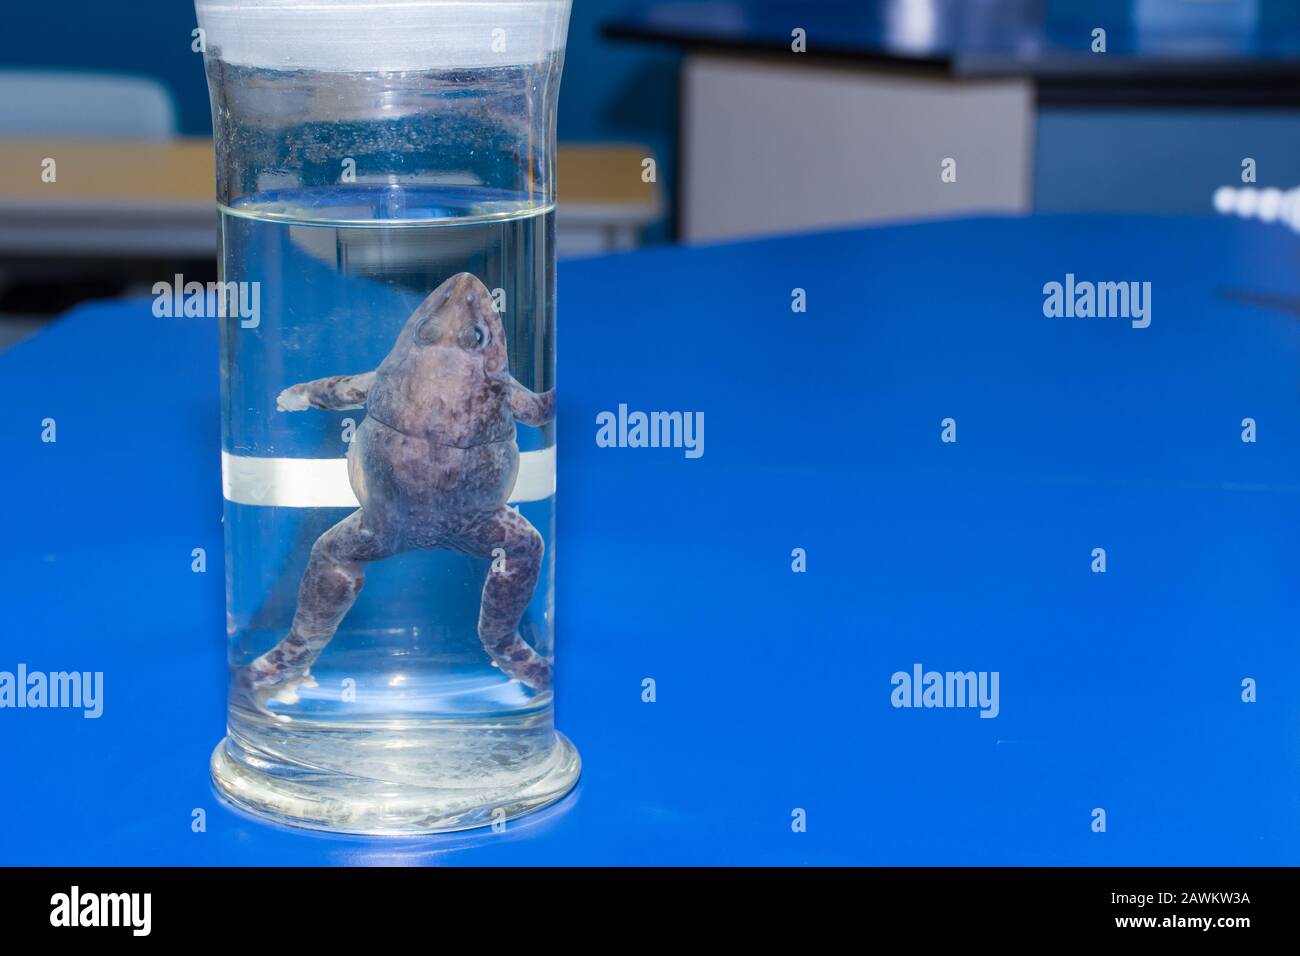 Biologie science dissection spécimen d'une grenouille dans un pot en verre sur une table de laboratoire bleue dans une école avec espace de copie. Banque D'Images